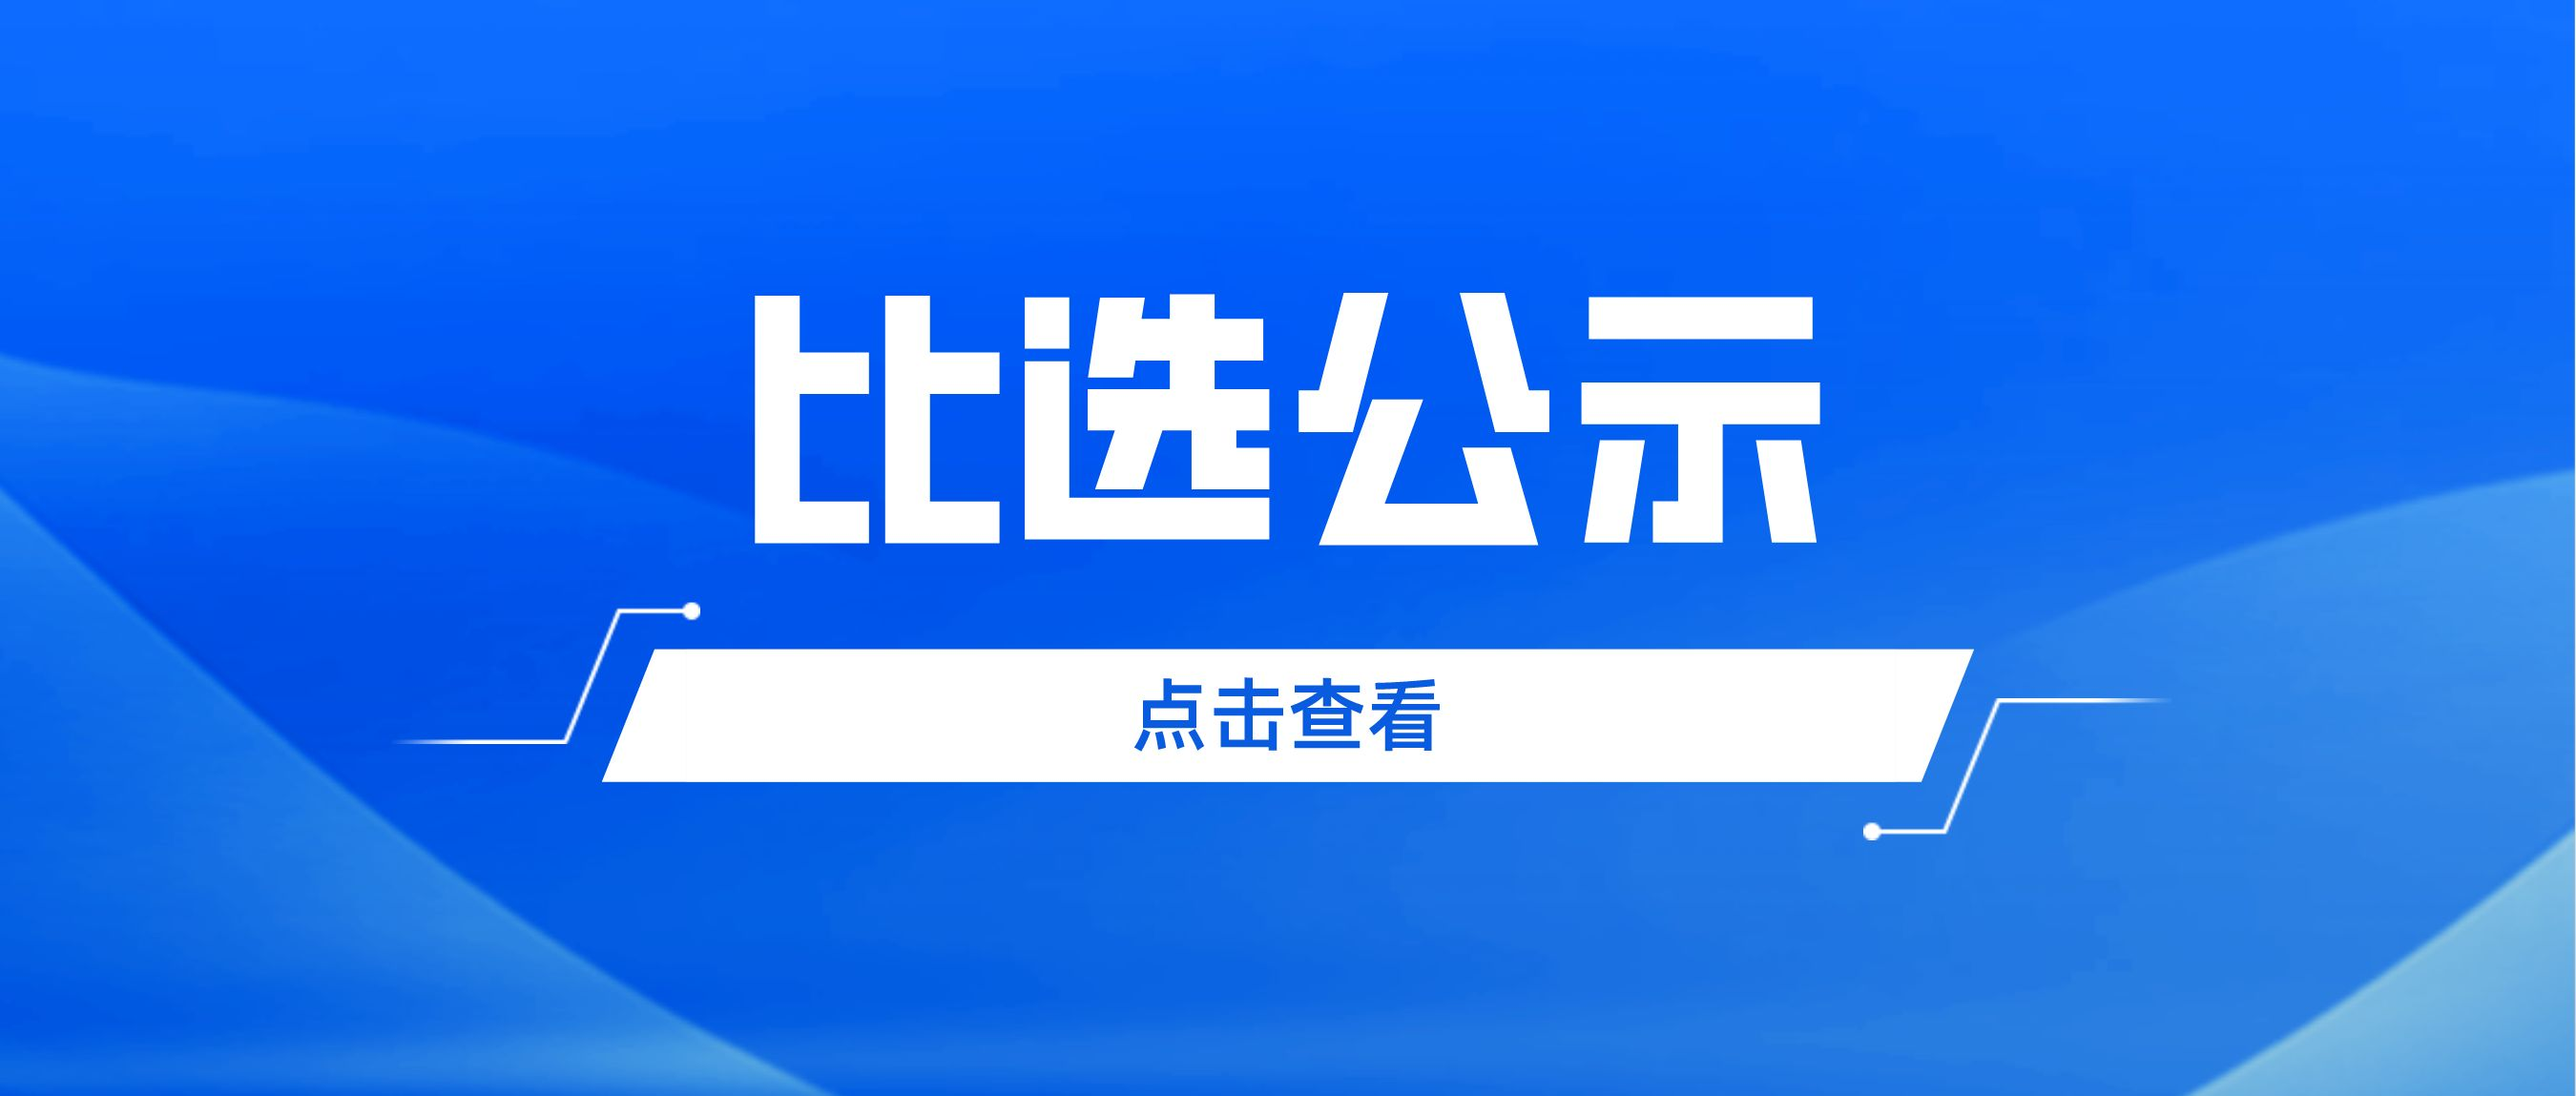 广州市志愿者协会第五届会员大会第一次会议暨换届选举大会、第五届理事会第一次会议会议场地比选结果公示